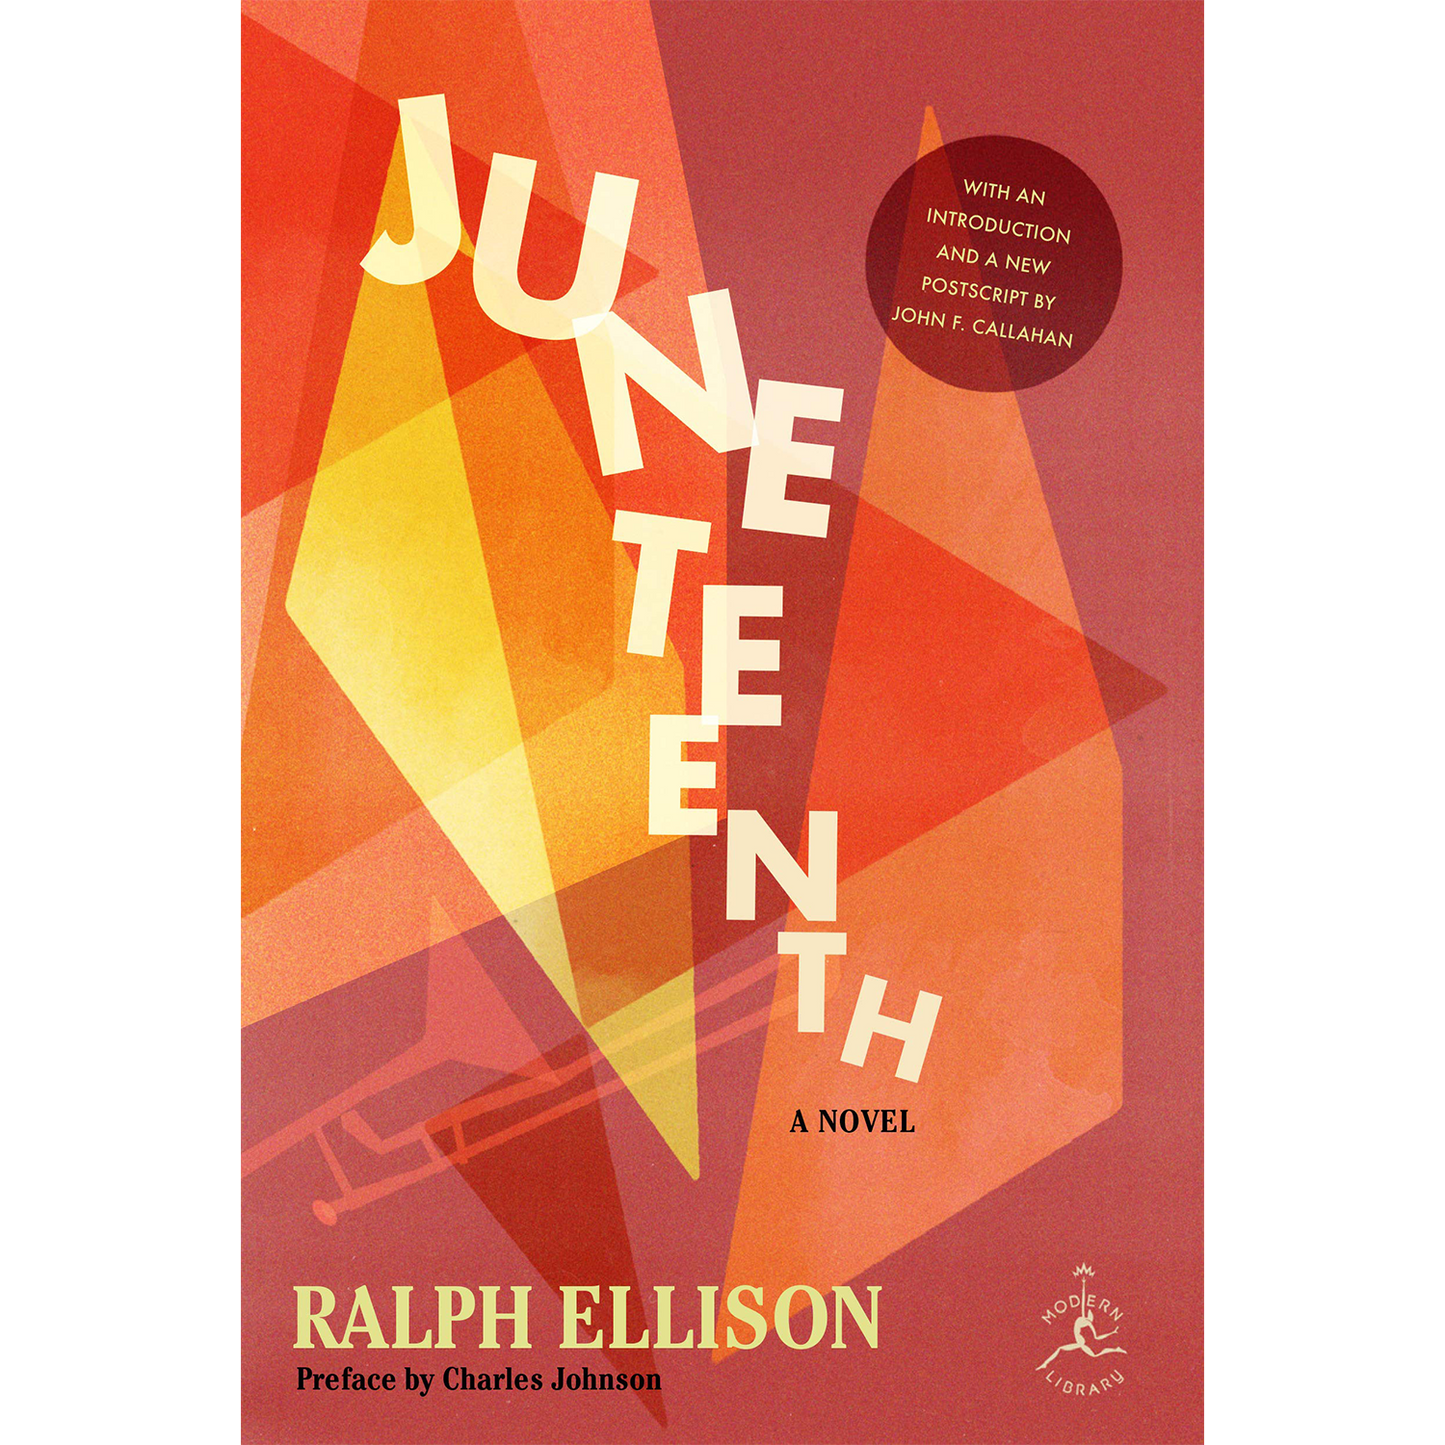 Juneteenth: A Novel (Modern Library) (Hardcover)